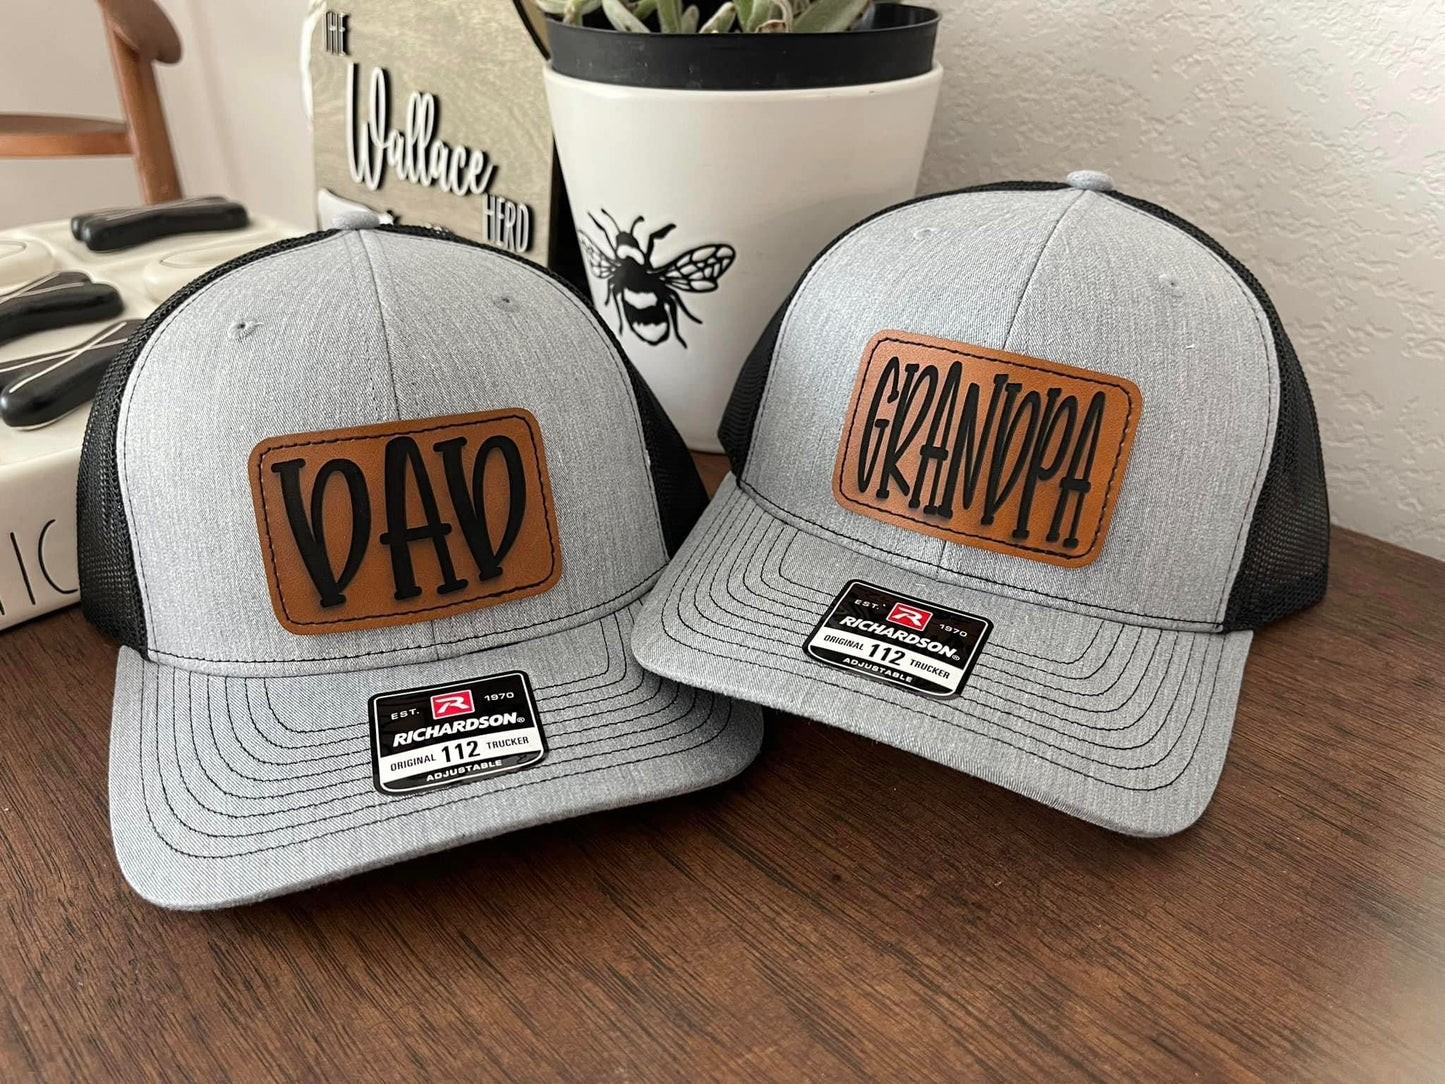 Custom Dad Hats